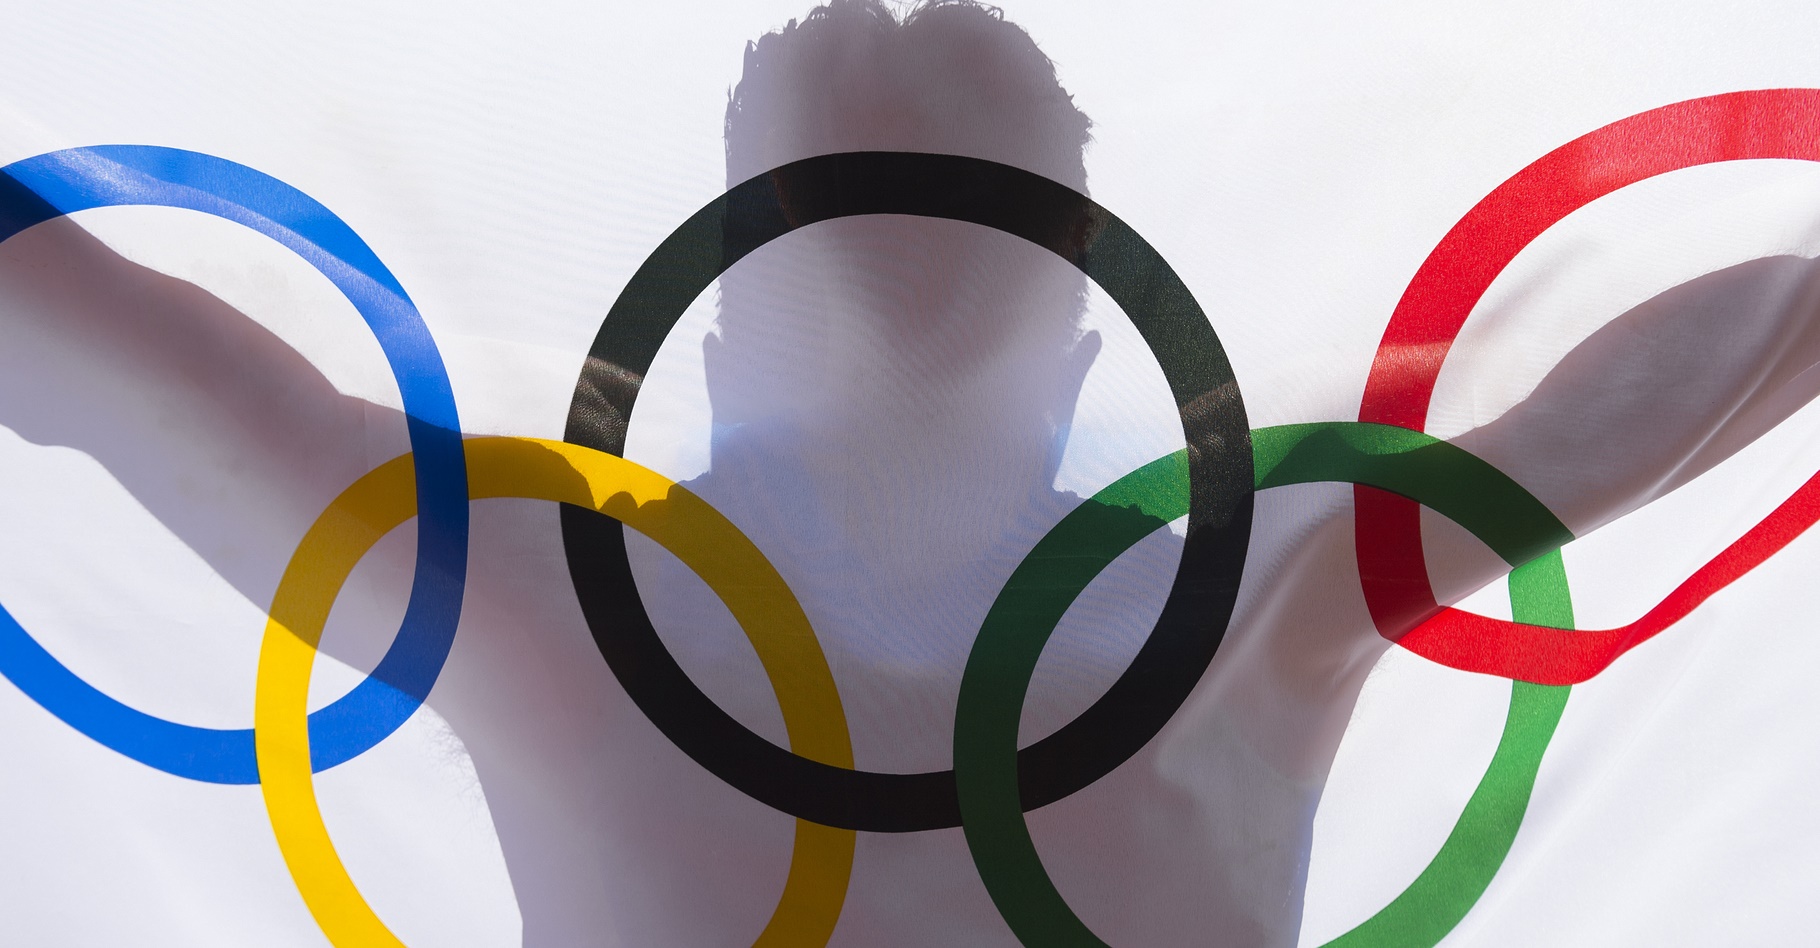 La cérémonie d’ouverture des Jeux olympiques de Rio aura lieu le vendredi 5 août. © lazyllama, Shutterstock